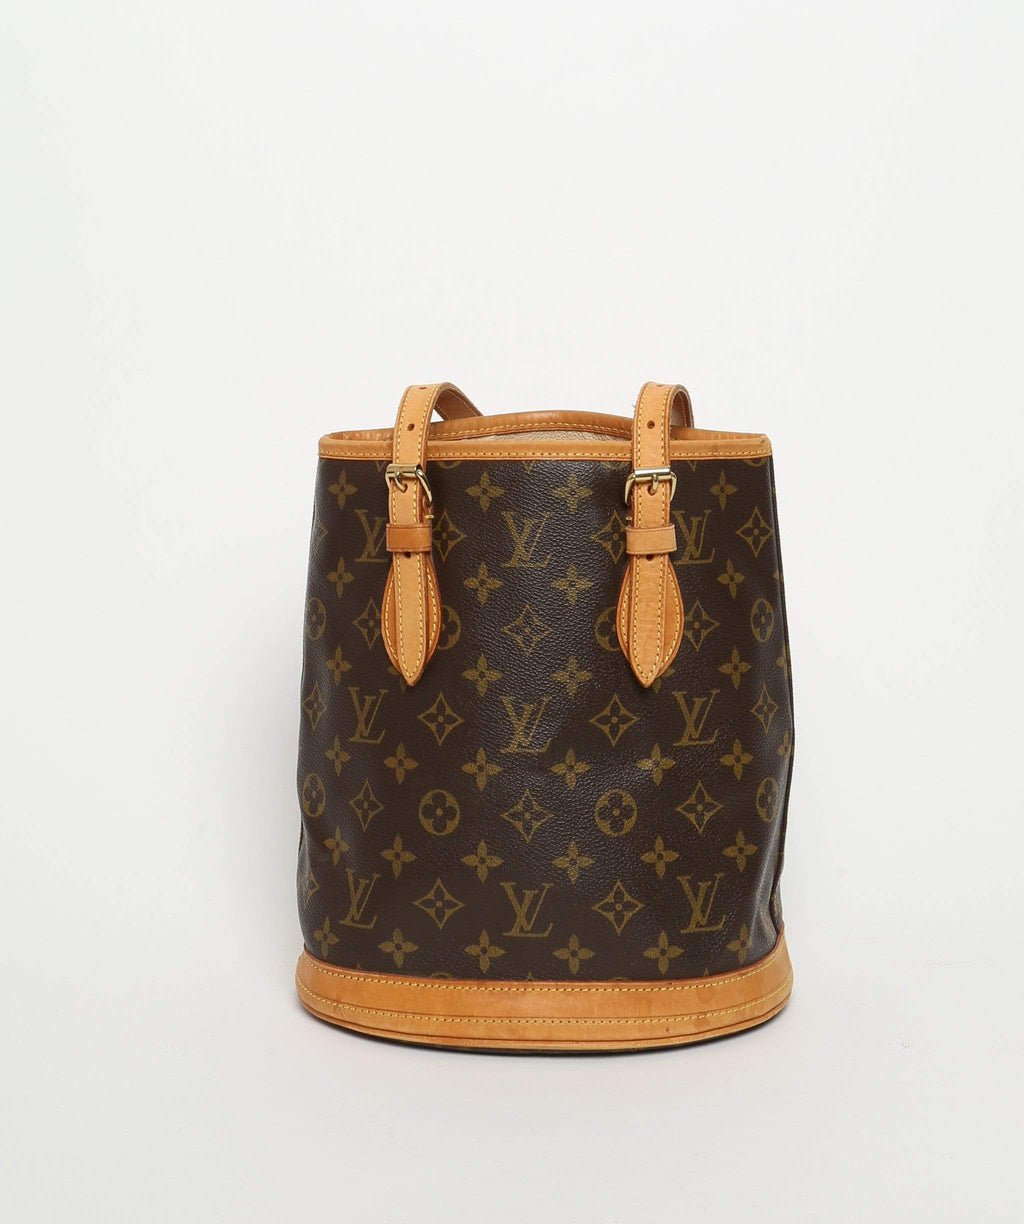 Louis Vuitton, Bags, Authentic Louis Vuitton Monogram Pm Bucket Bag